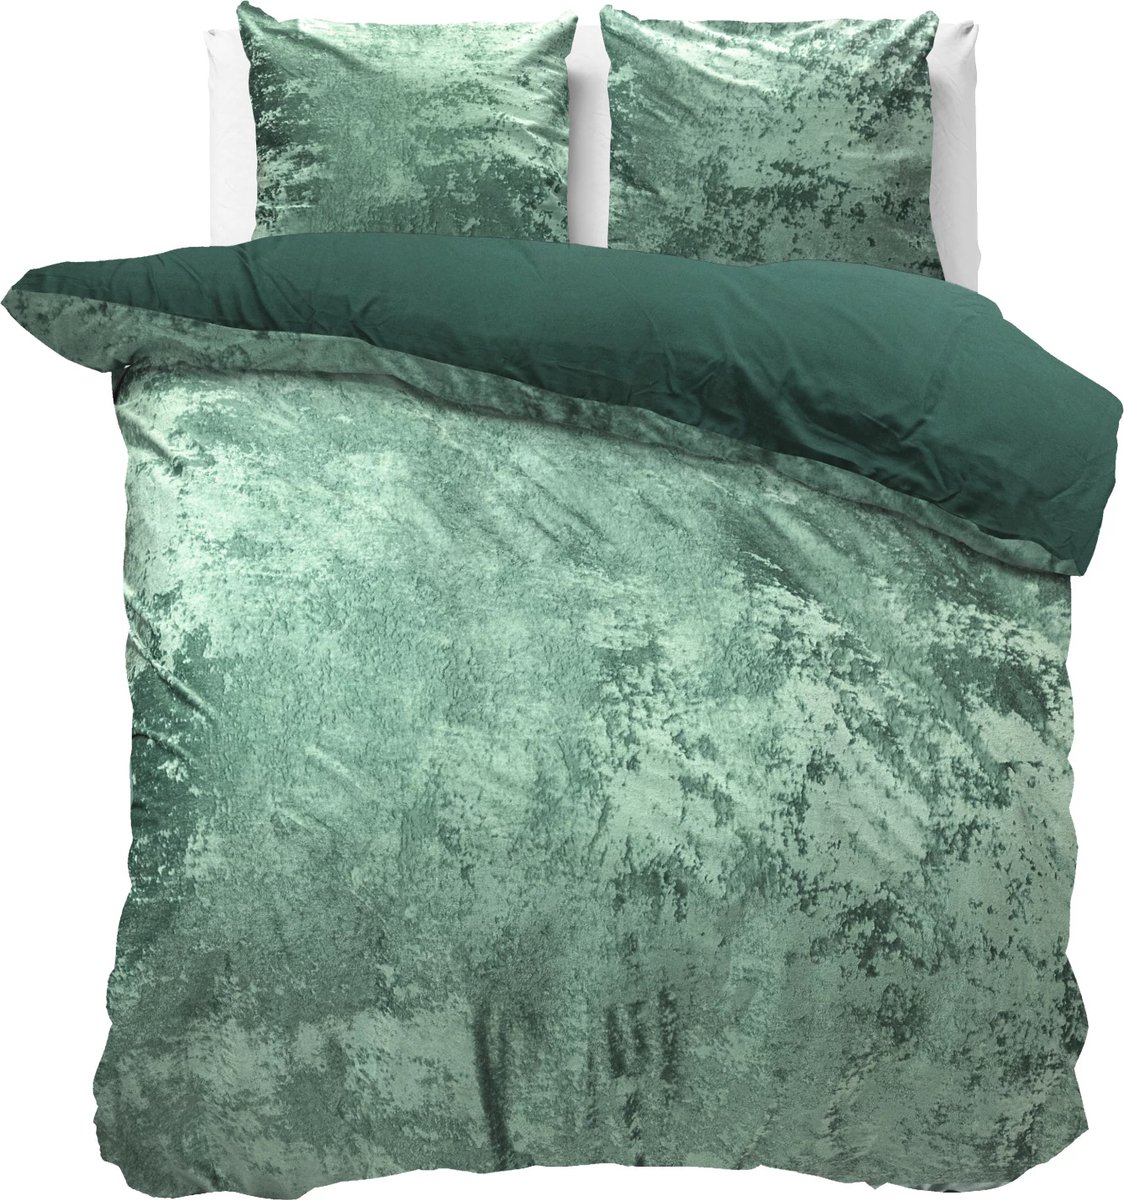 Fluweel zachte velvet dekbedovertrek uni groen - 240x200/220 (lits-jumeaux) - super fijn slapen - glinsterend effect - premium kwaliteit - met handige drukknopen